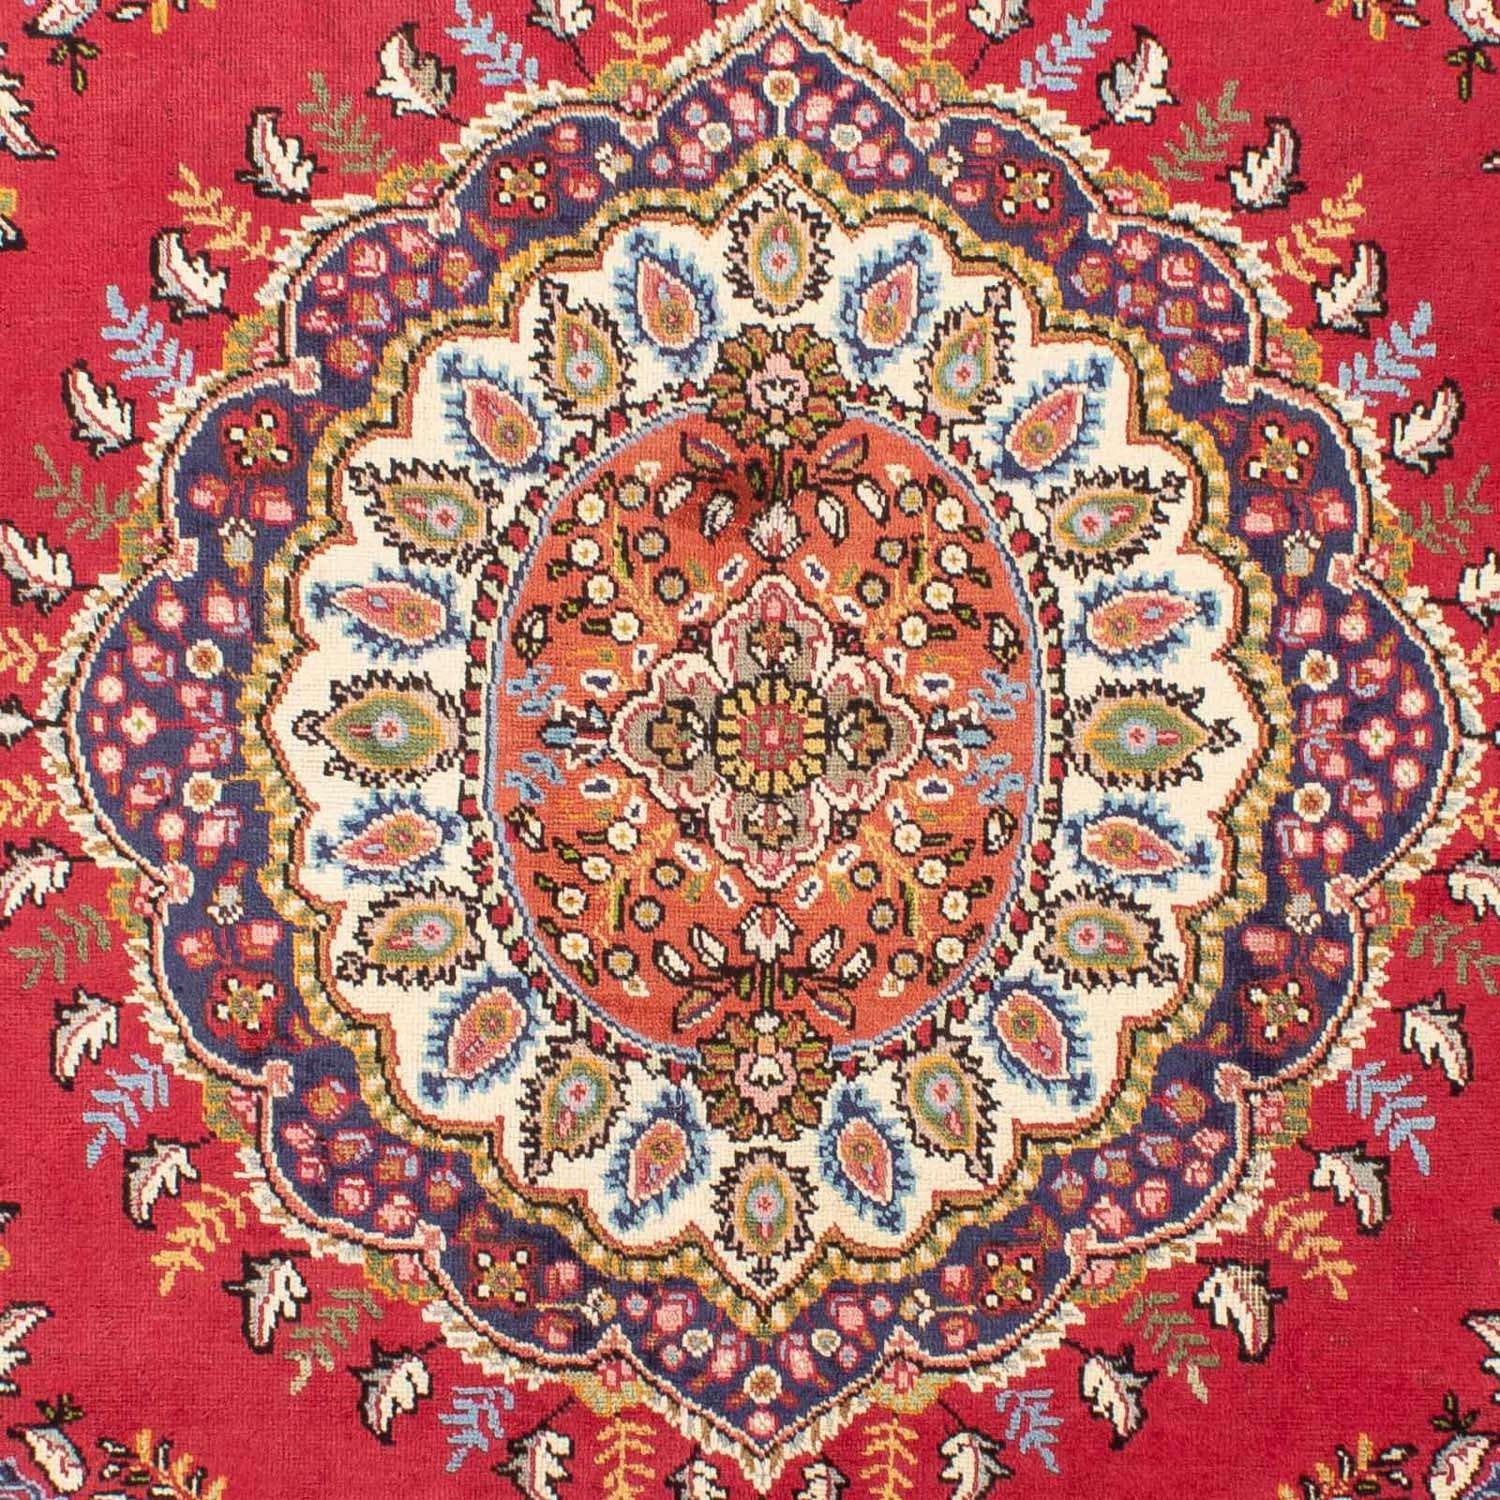 Perský koberec - Tabríz - 290 x 193 cm - červená